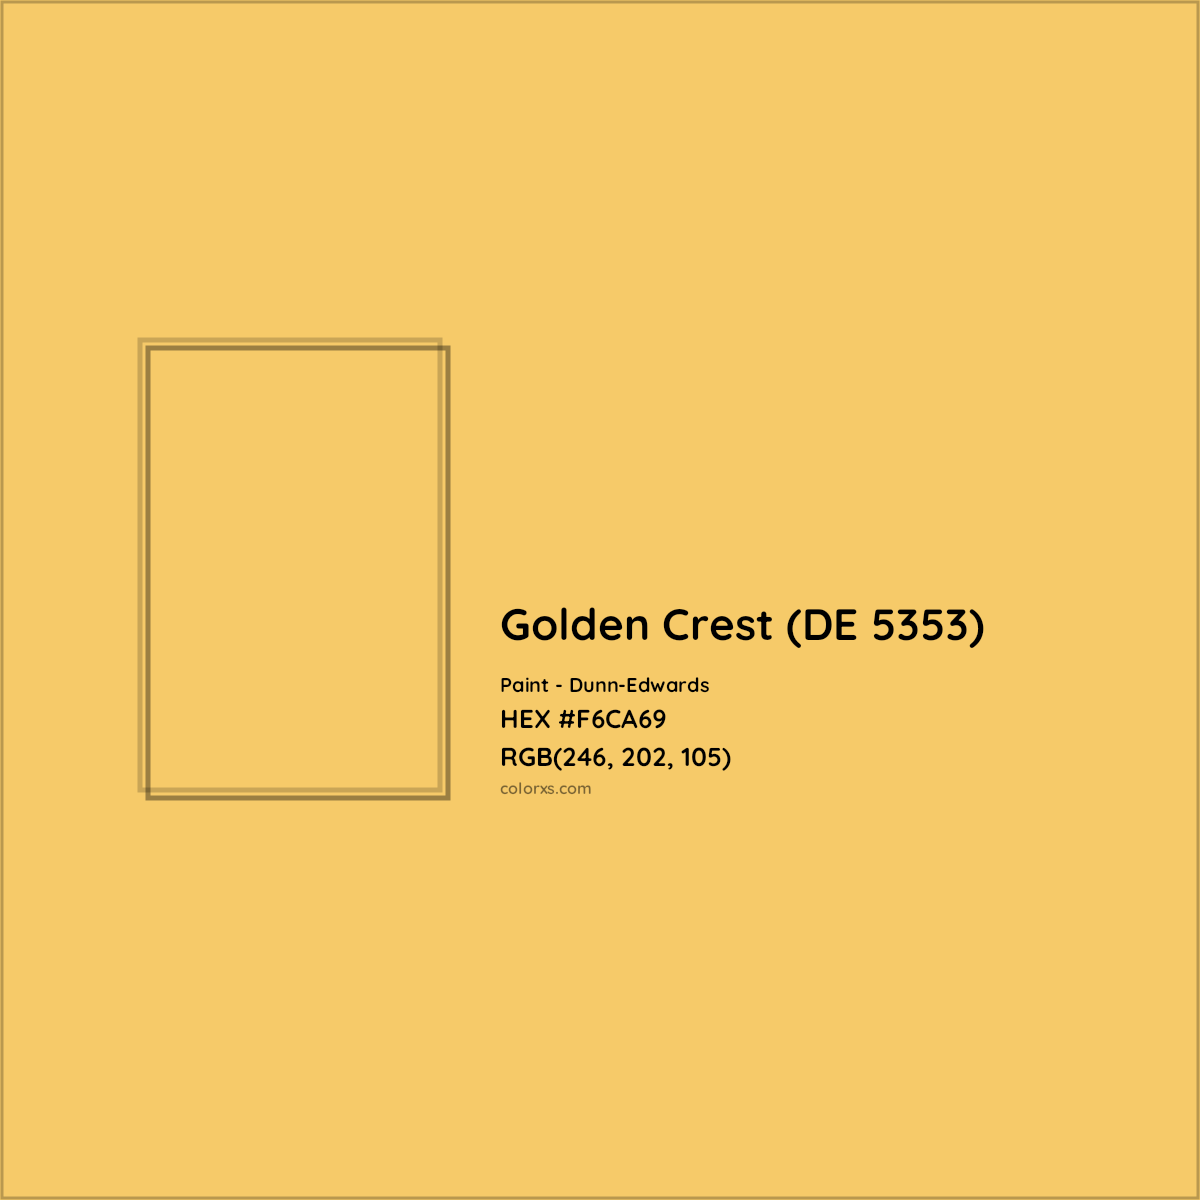 HEX #F6CA69 Golden Crest (DE 5353) Paint Dunn-Edwards - Color Code